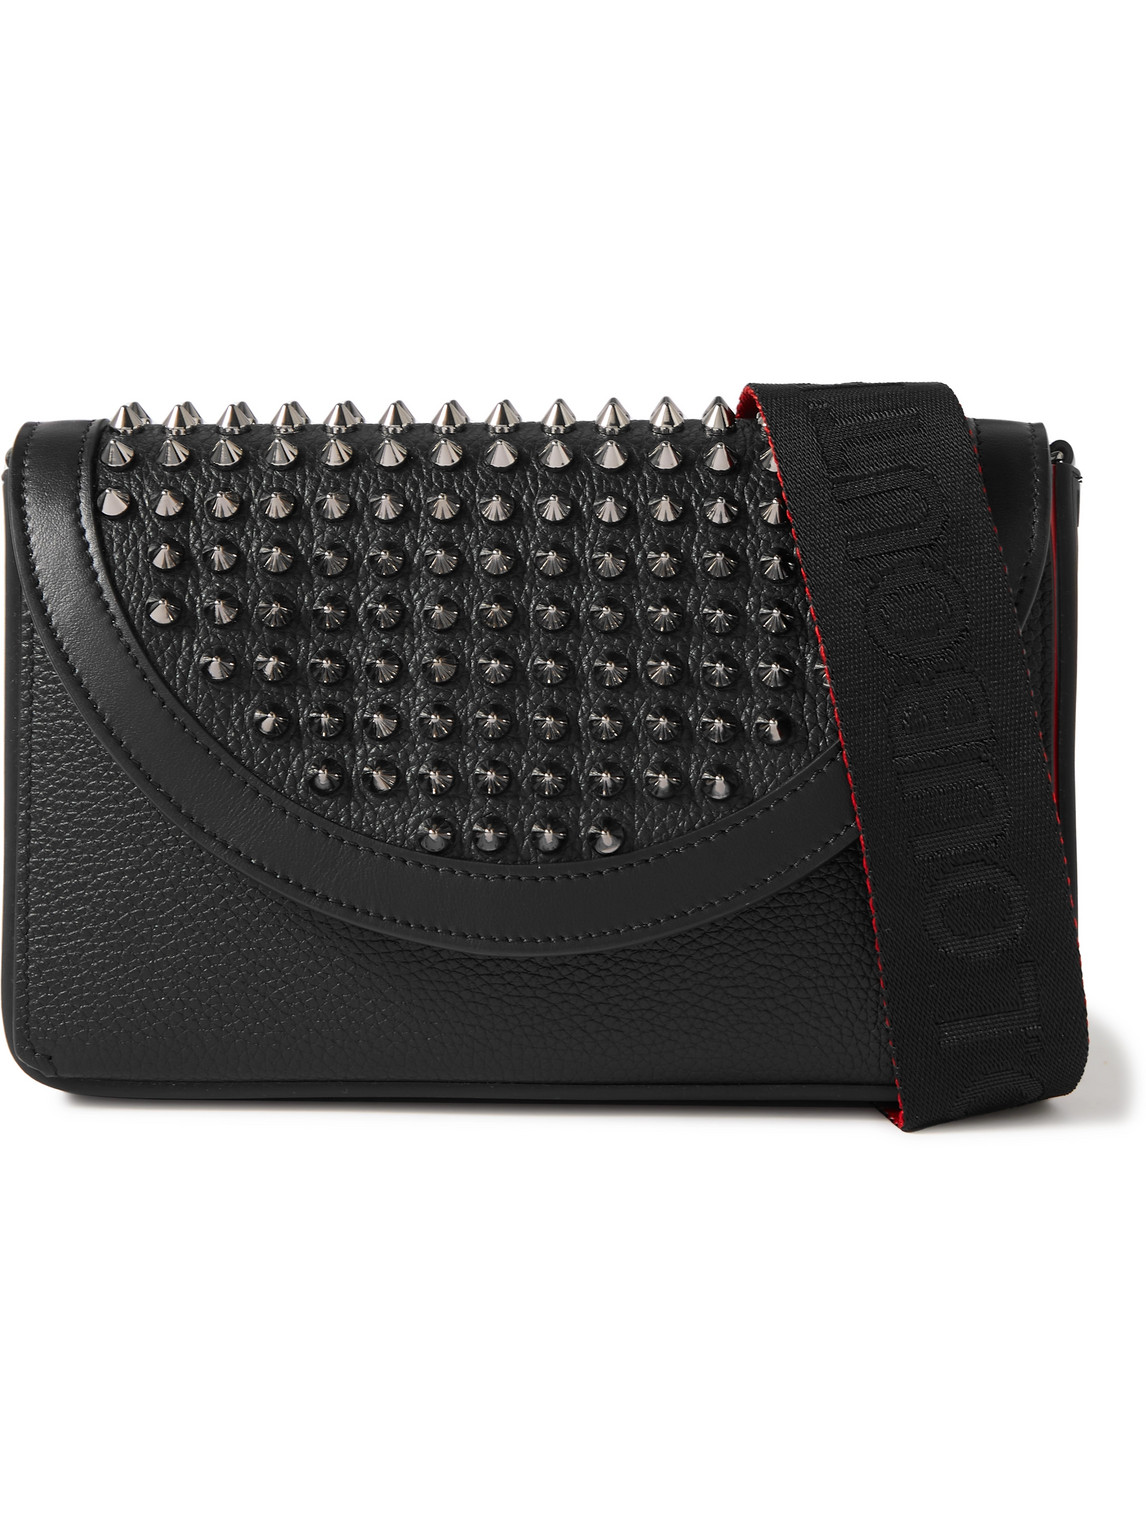 Christian Louboutin Explorafunk Studded Full-grain Leather Messenger Bag In Black